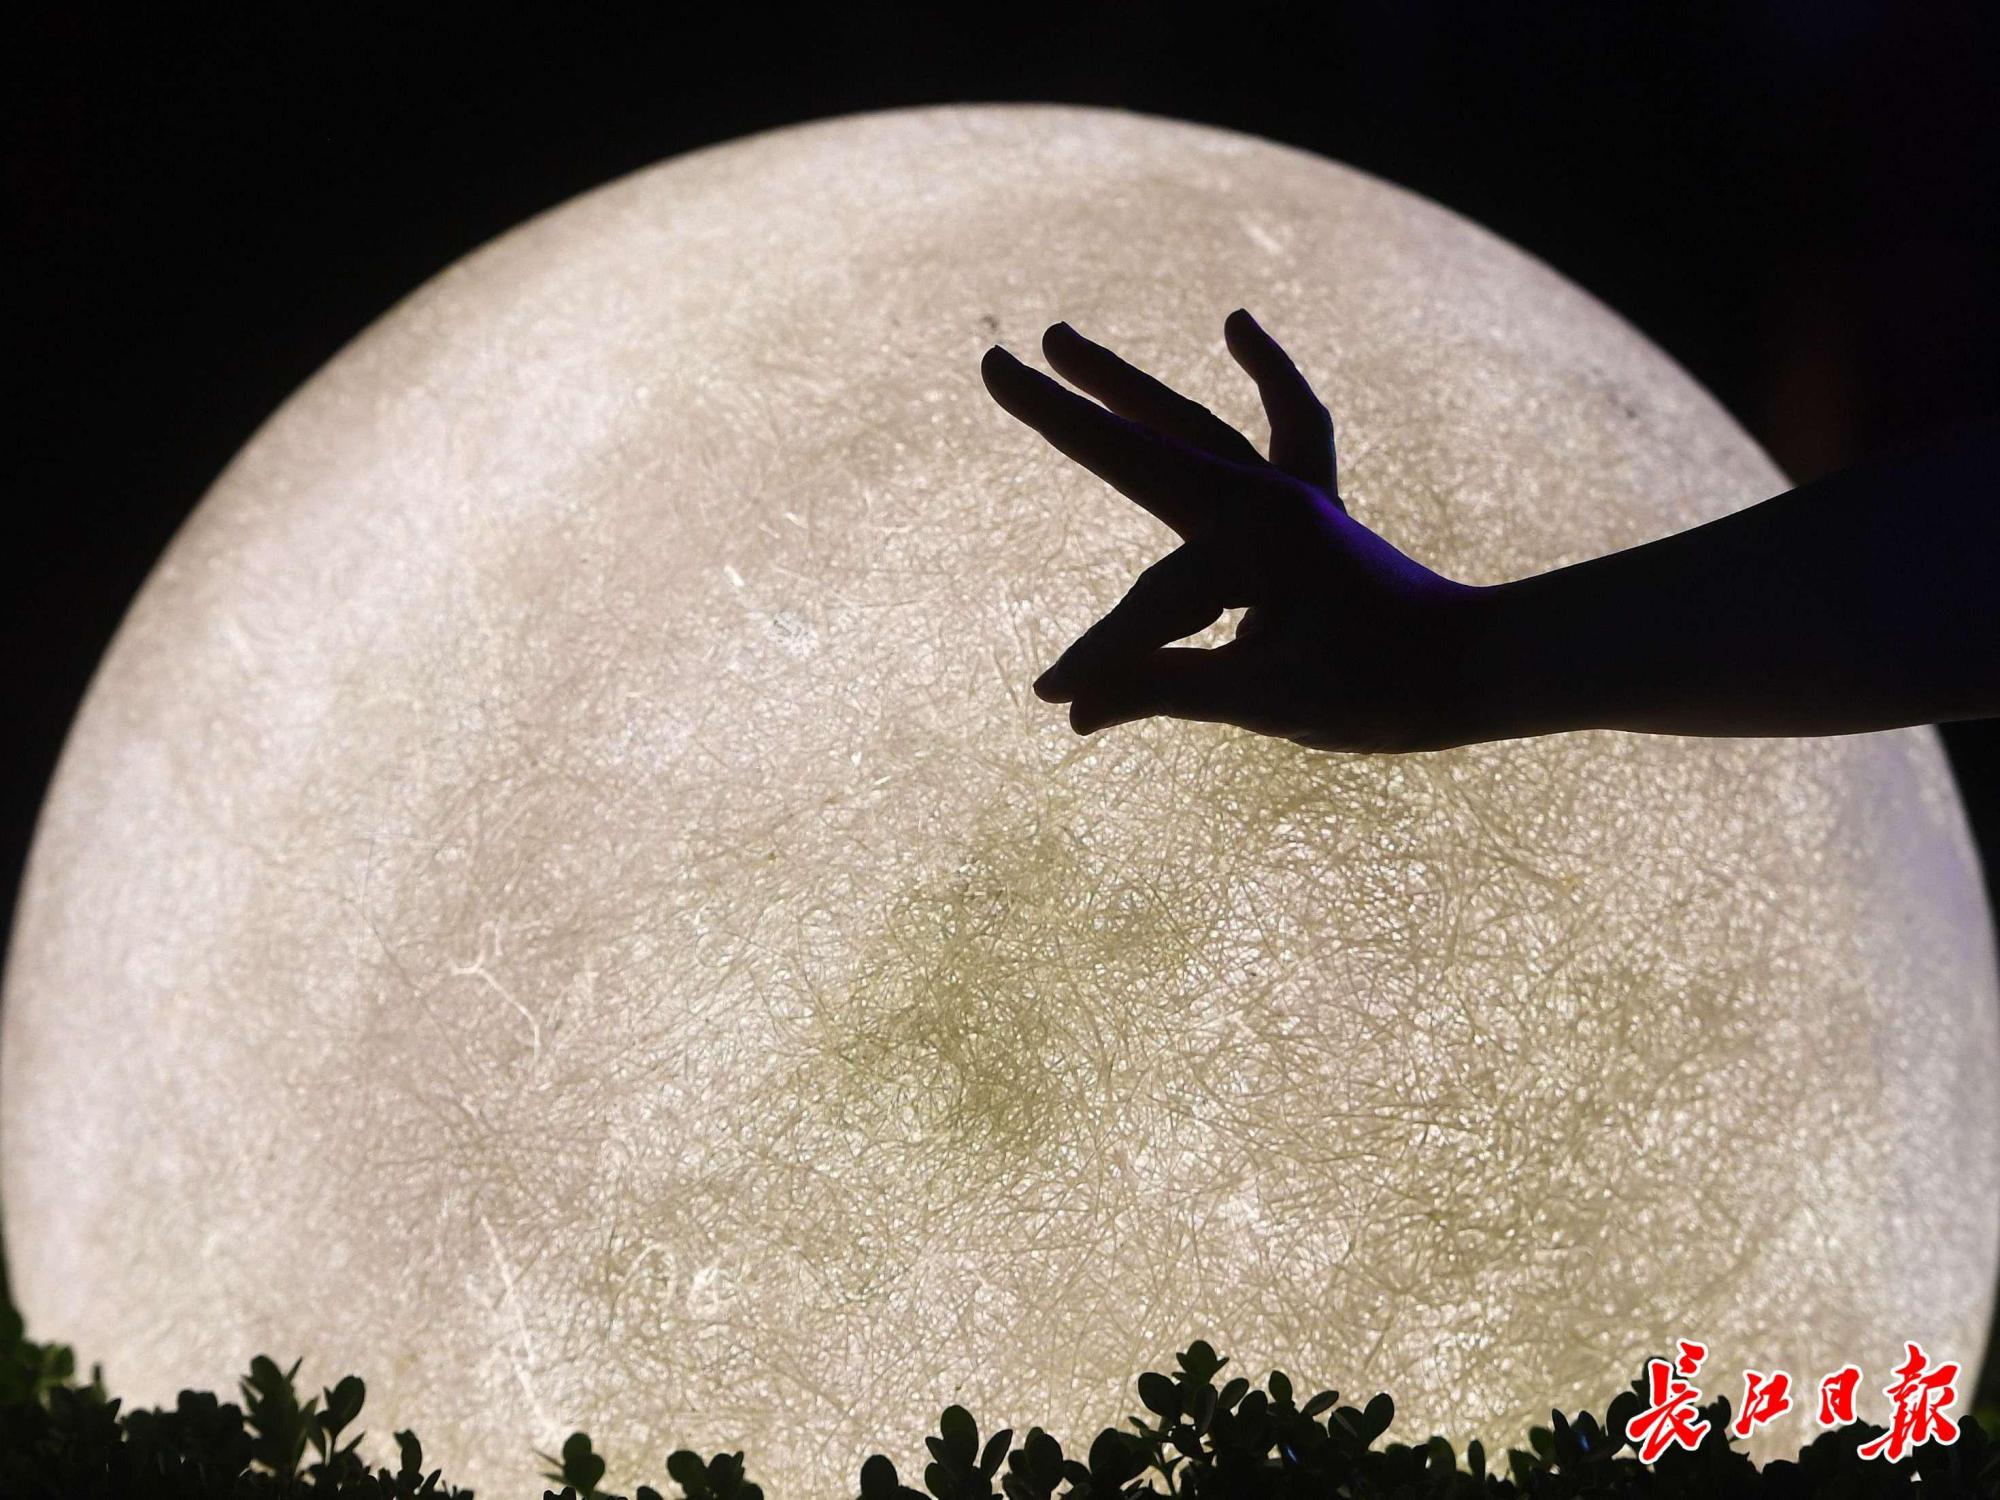 中秋夜,他们在武汉的"诗与远方"看月亮